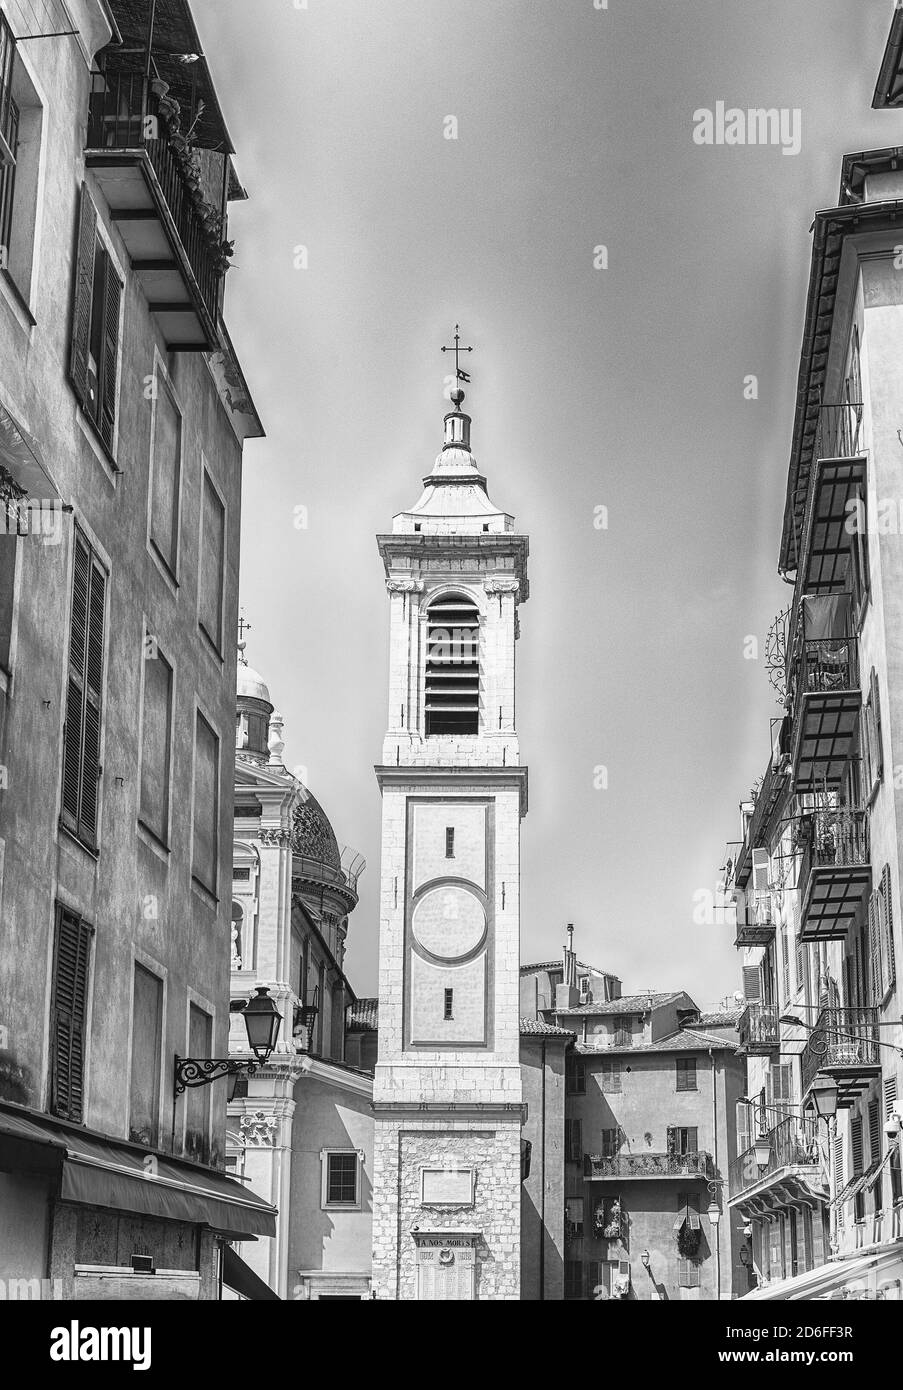 Campanile della Cattedrale barocca di Santa Reparata, nel centro storico di Nizza, Costa Azzurra, Francia Foto Stock